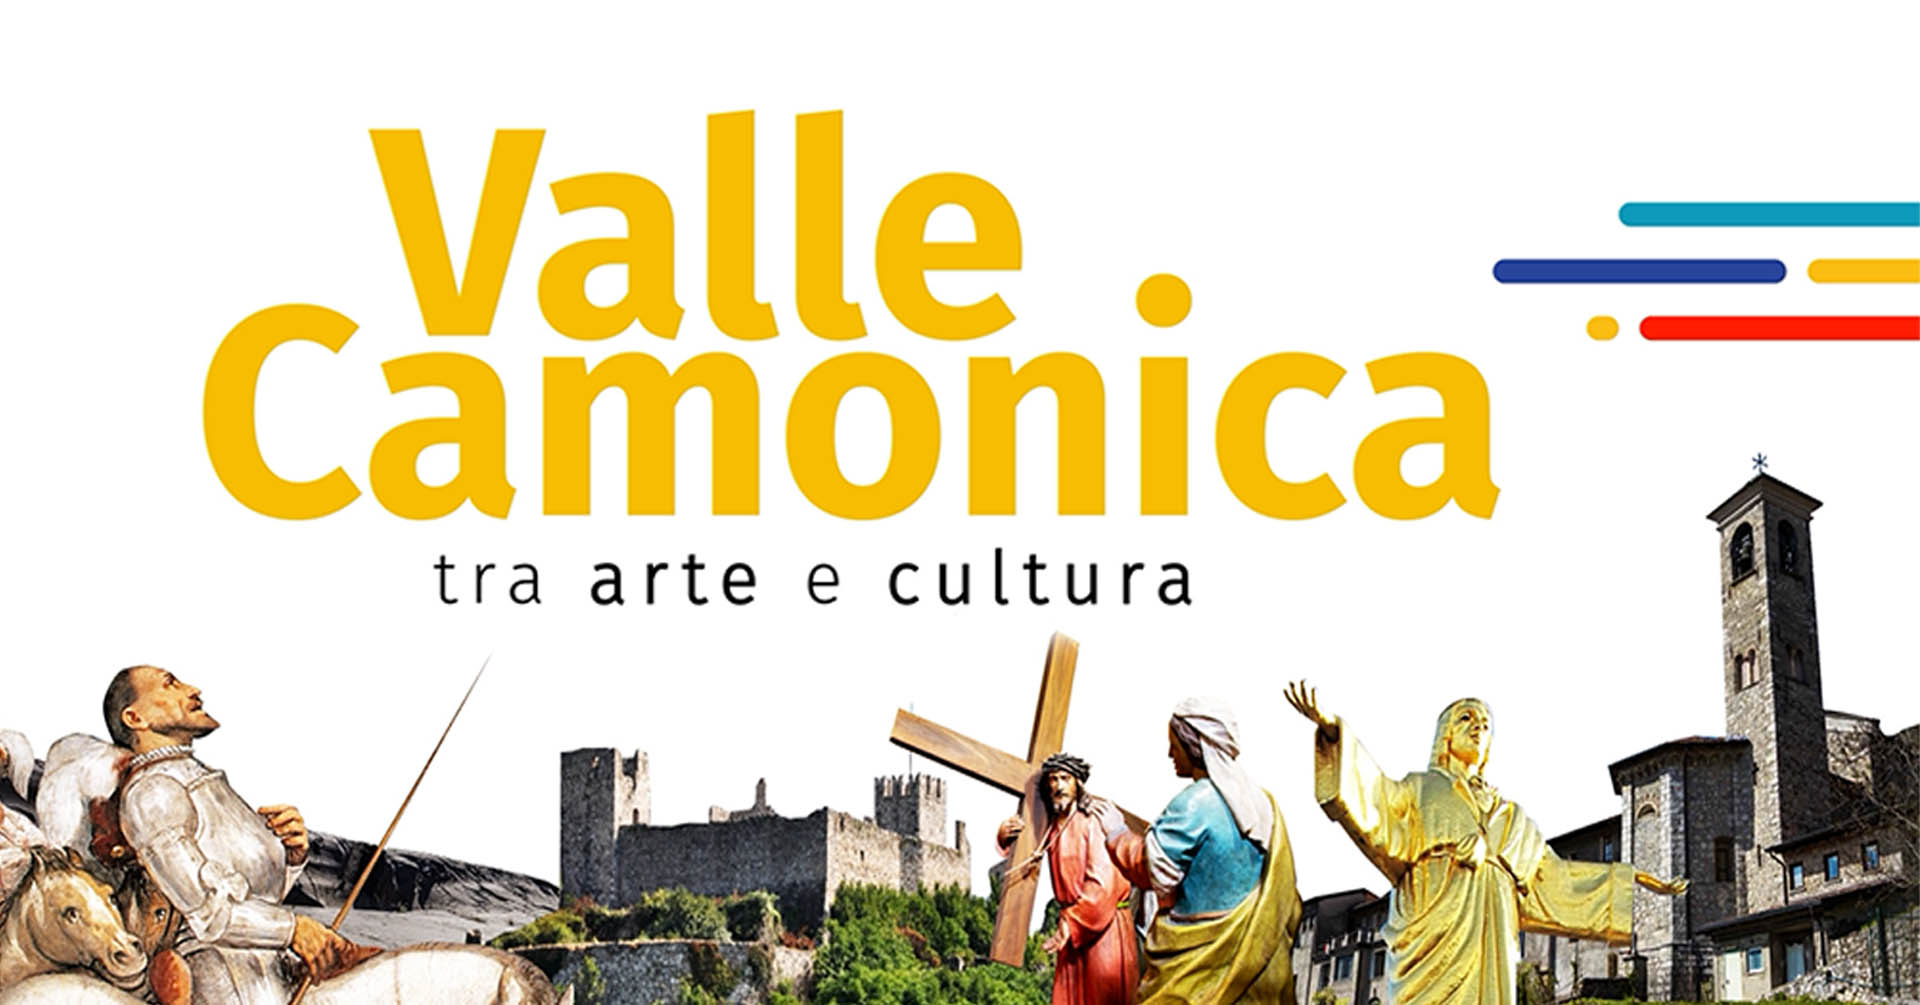 Valle Camonica, tra arte e cultura